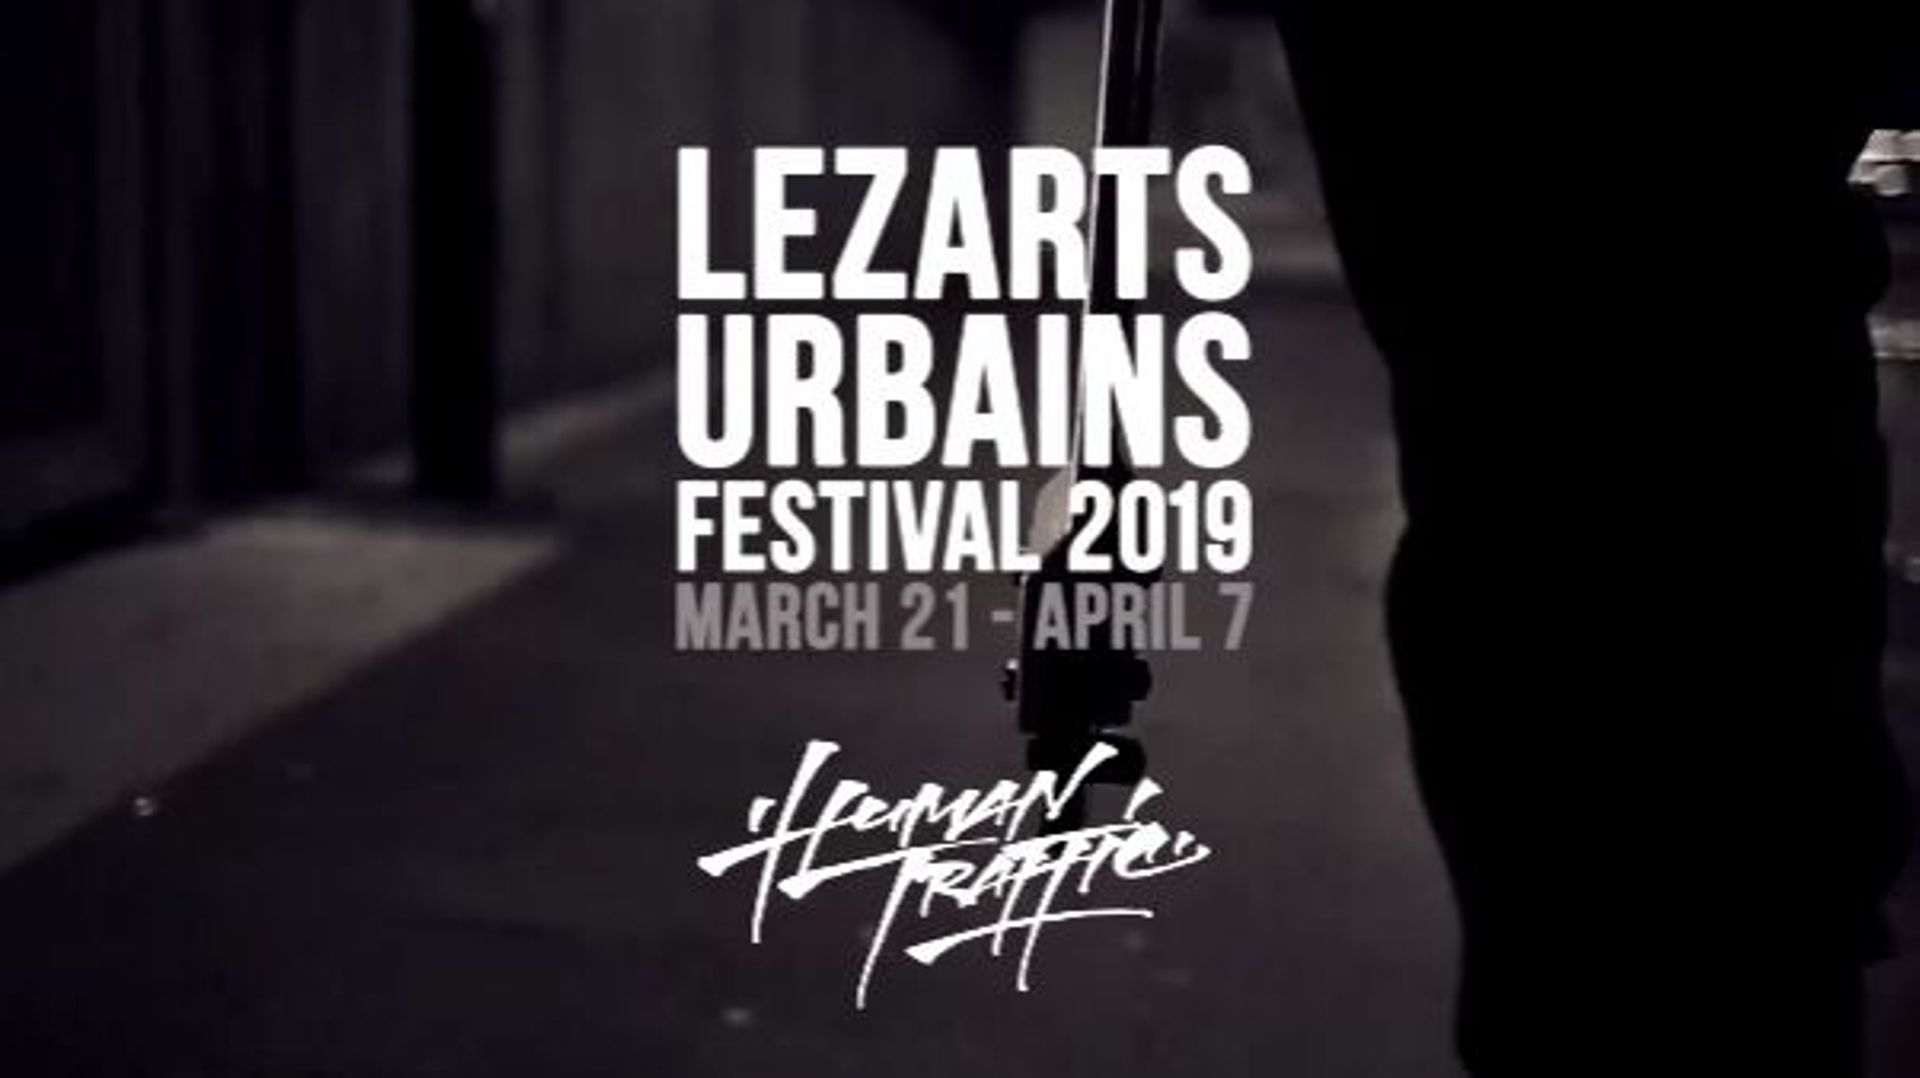 le-festival-lezarts-urbains-s-ouvre-a-bruxelles-sous-le-theme-humantraffic